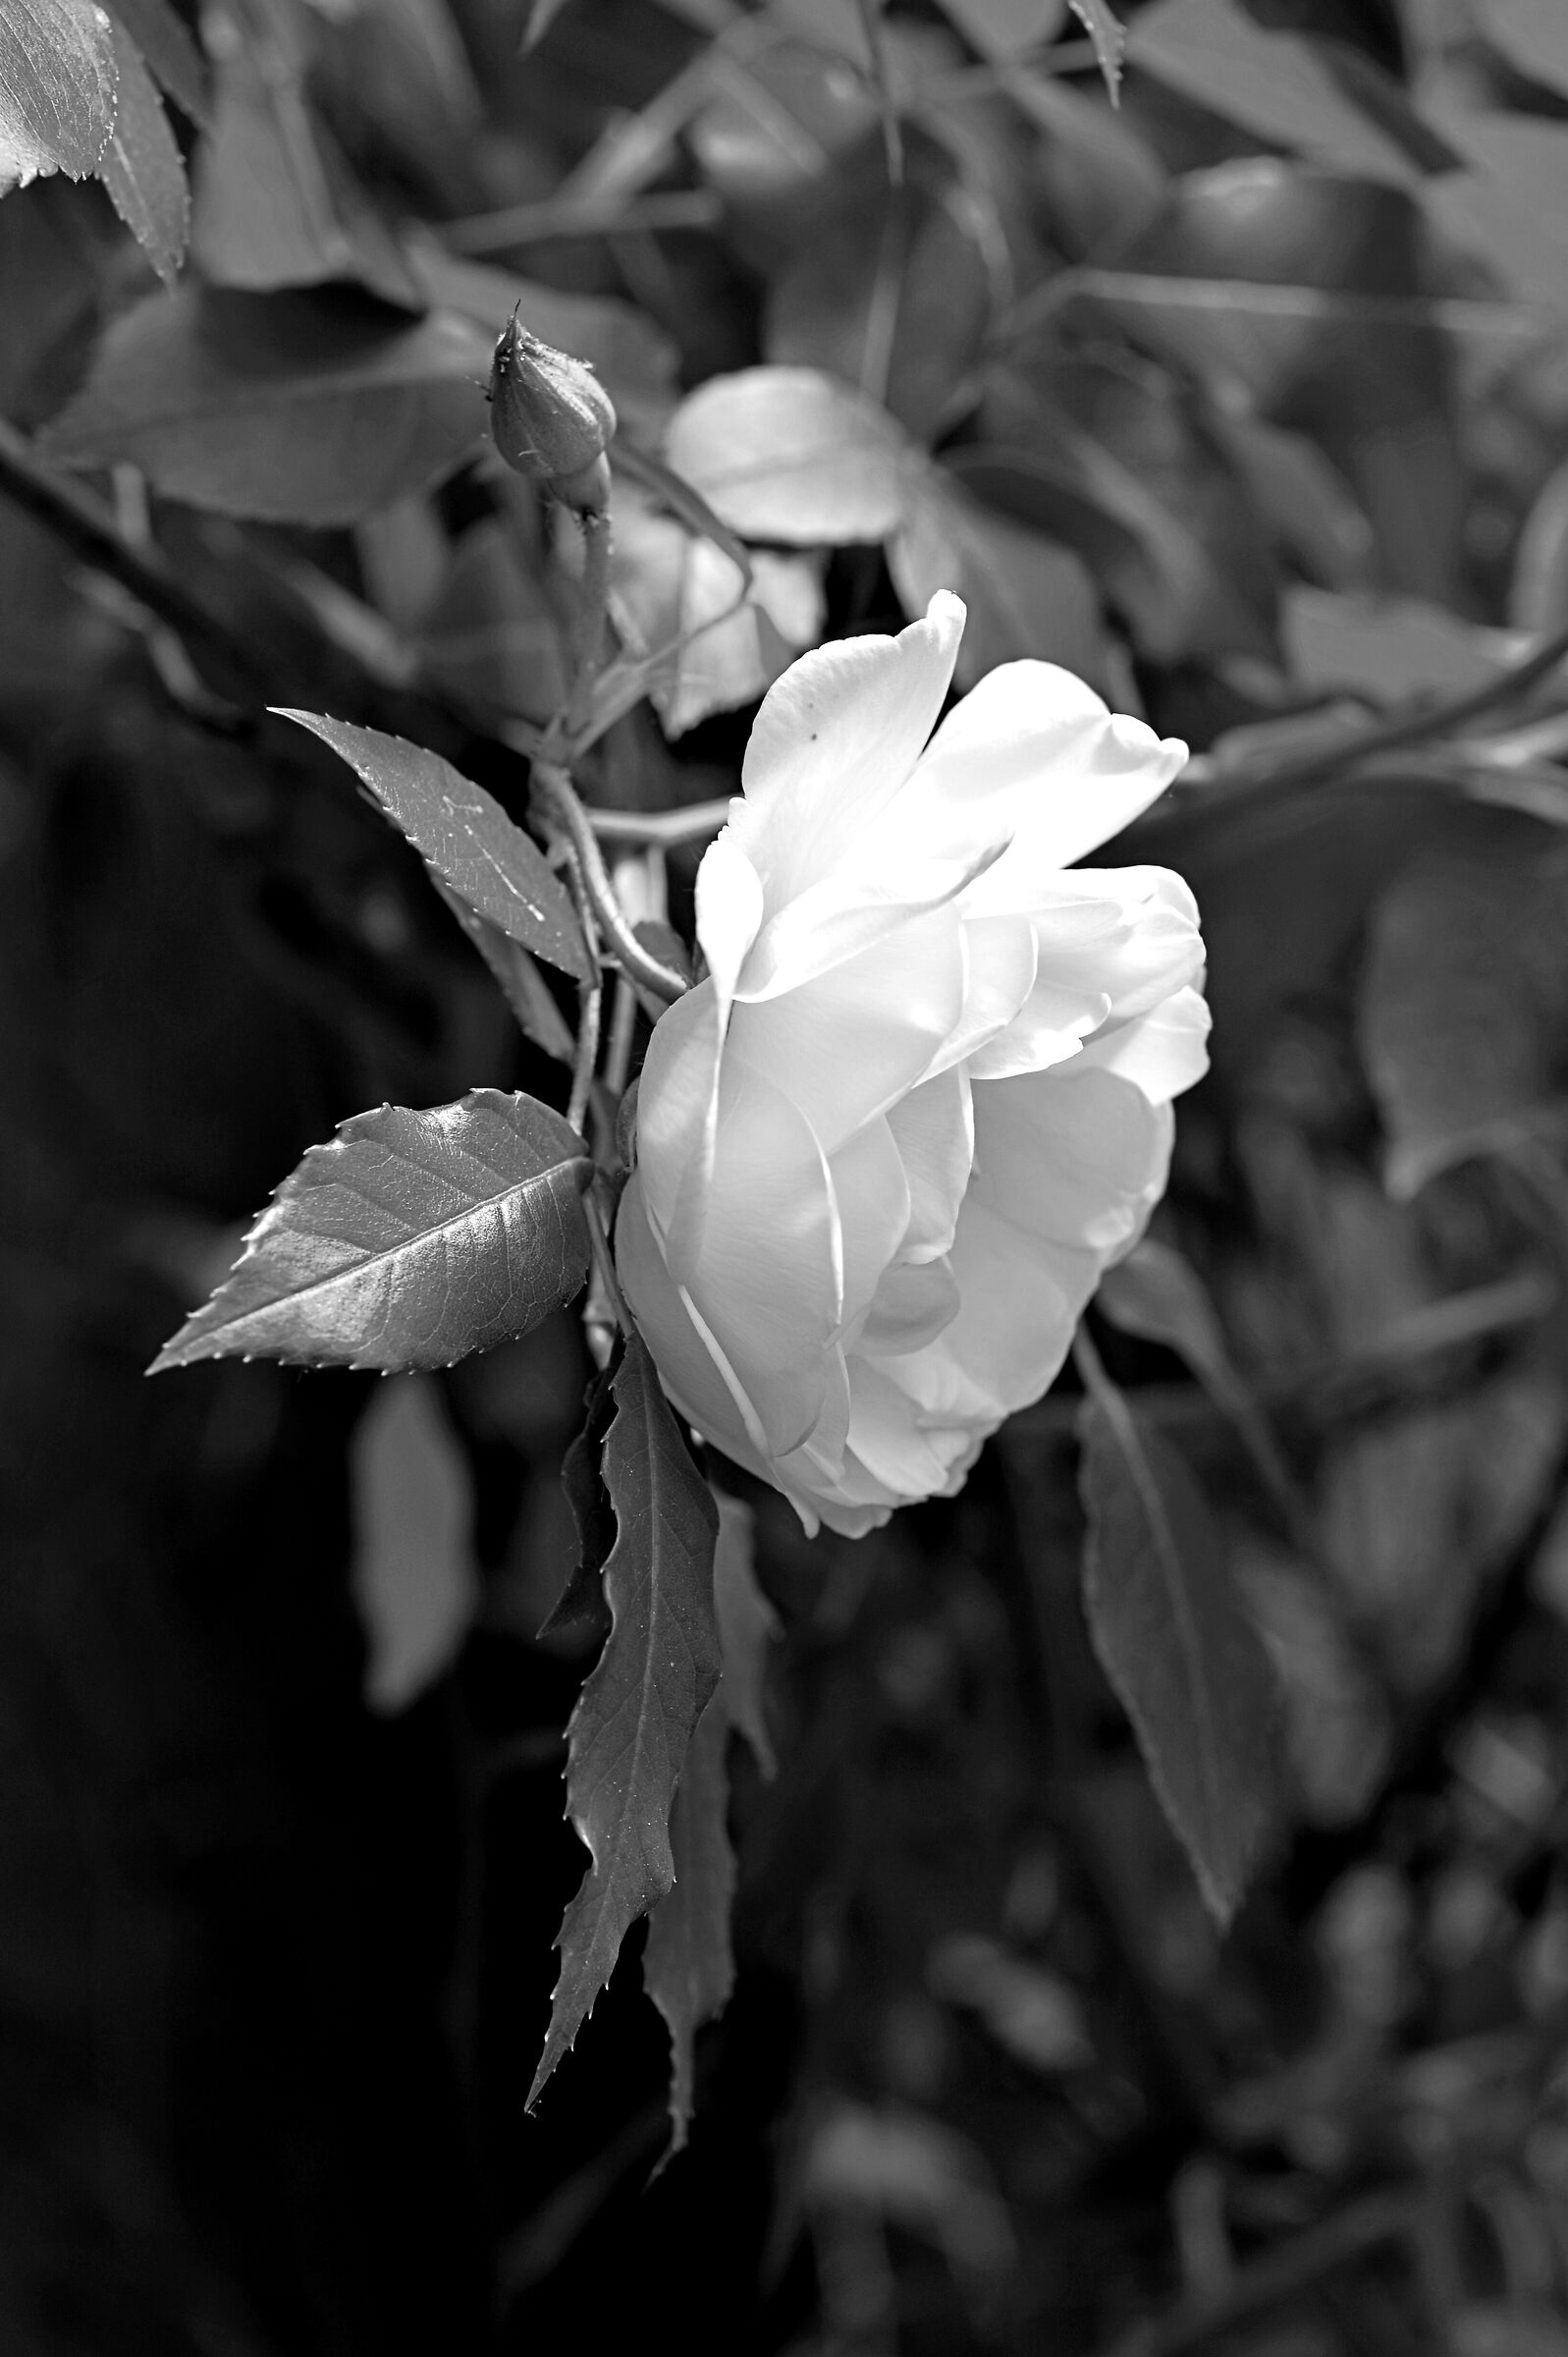 Rosa in bianco e nero...